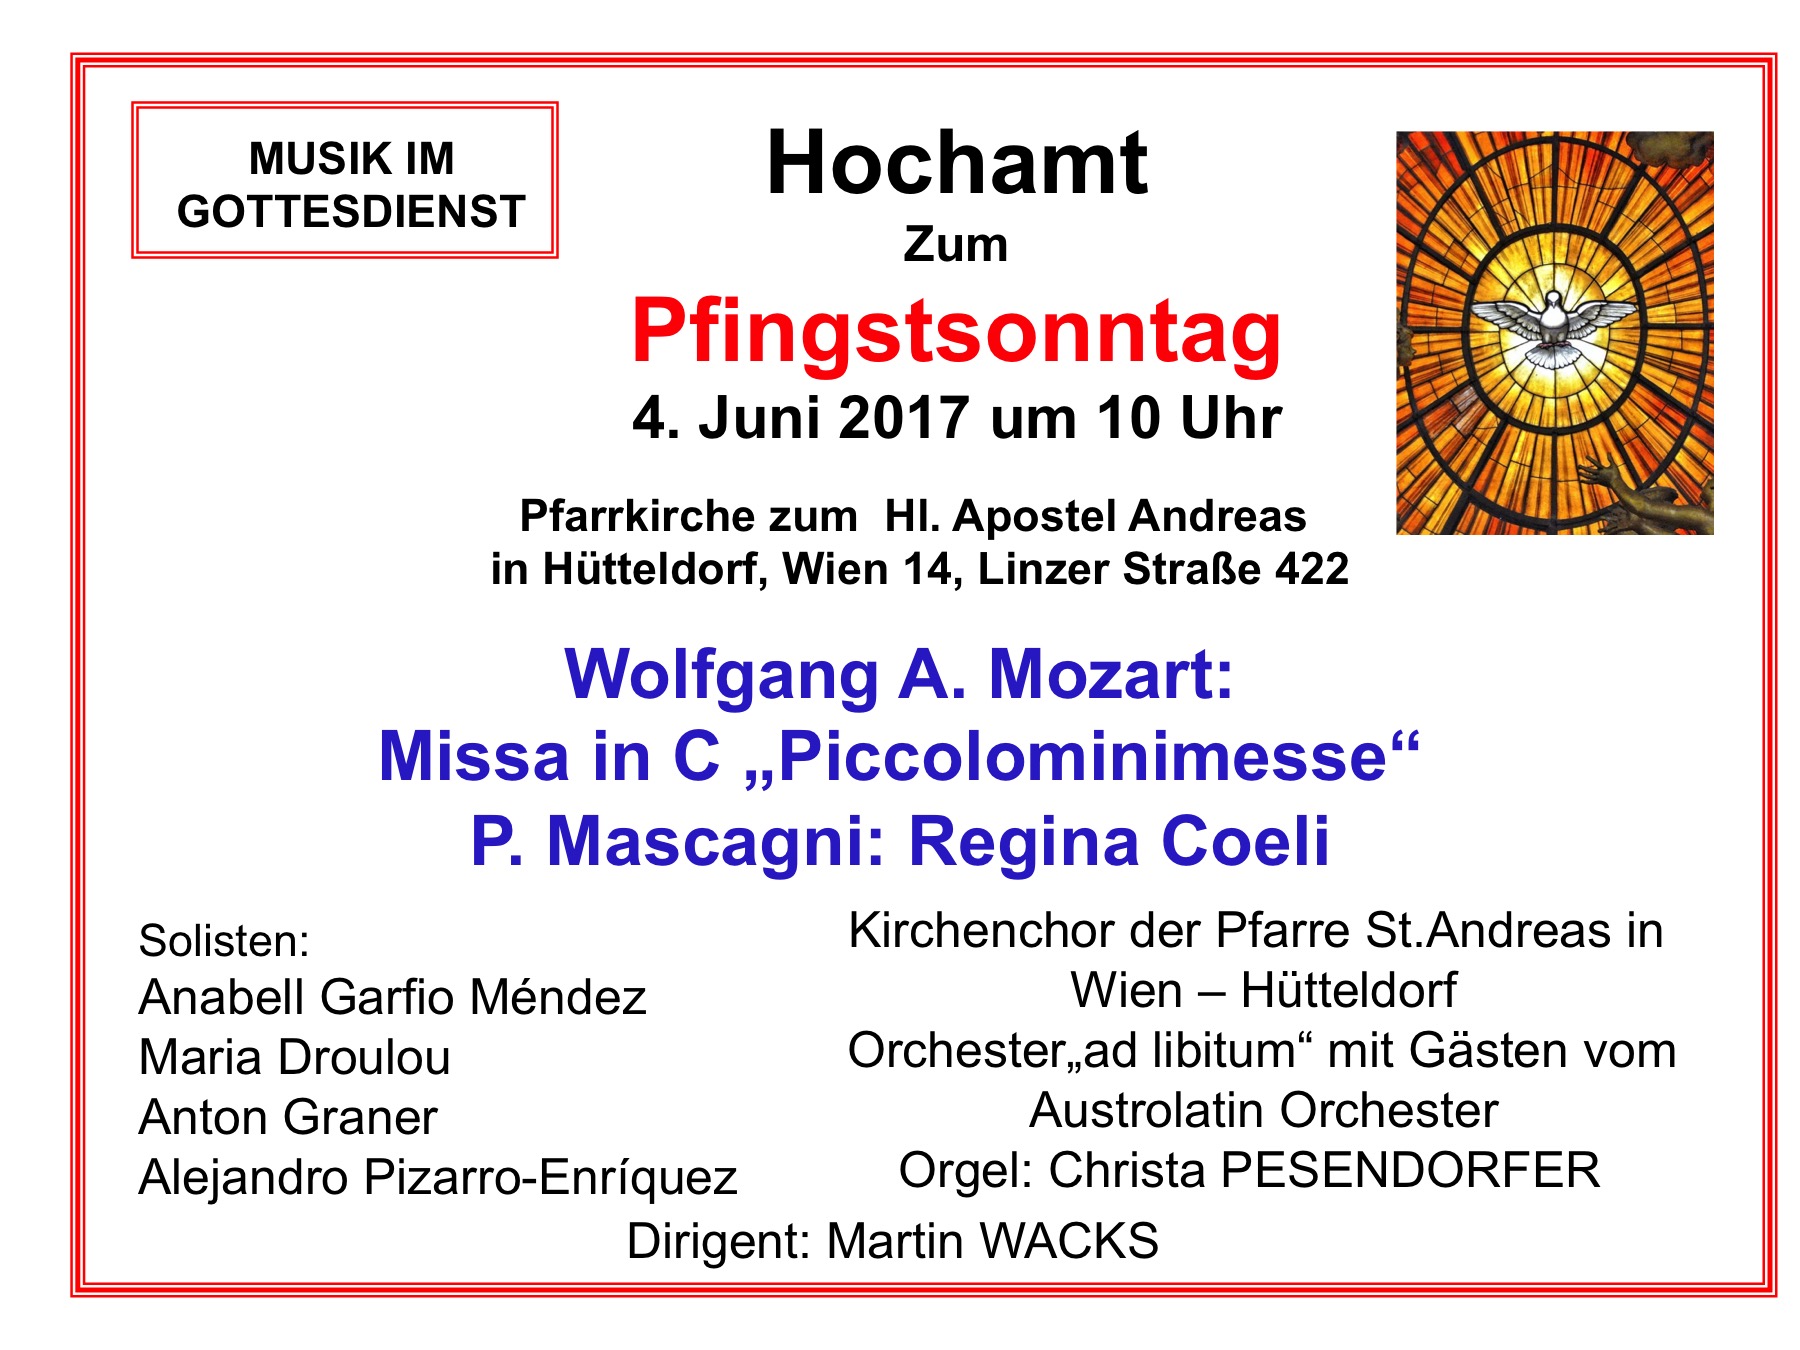 Mozart und Mascagni